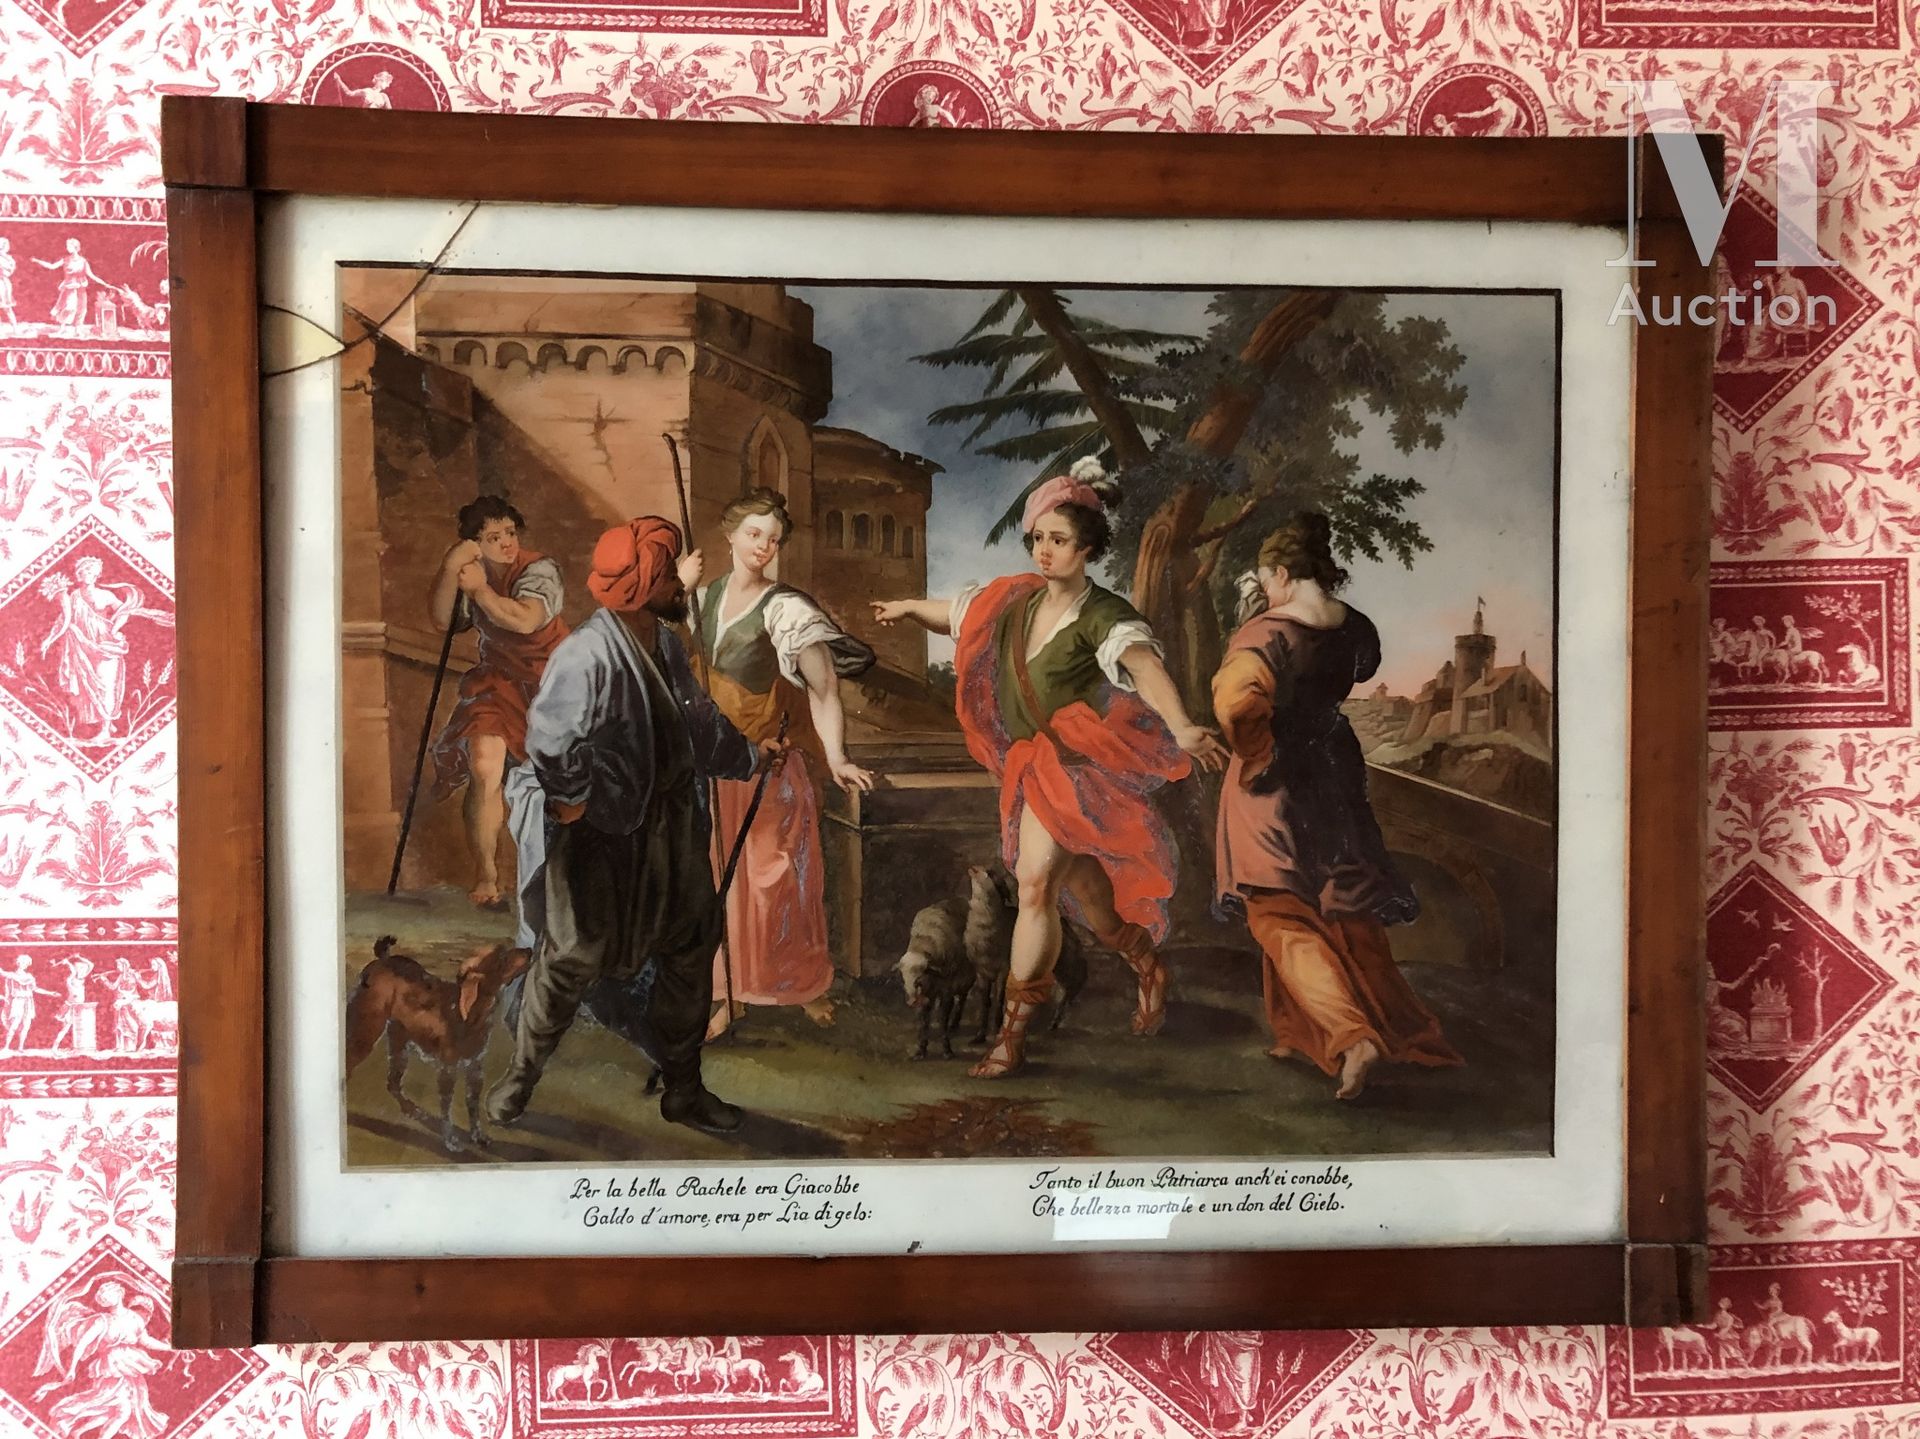 FIXE SOUS VERRE Rachel e Jacobé

XVIII secolo 

Incidenti 

46 x 60 cm